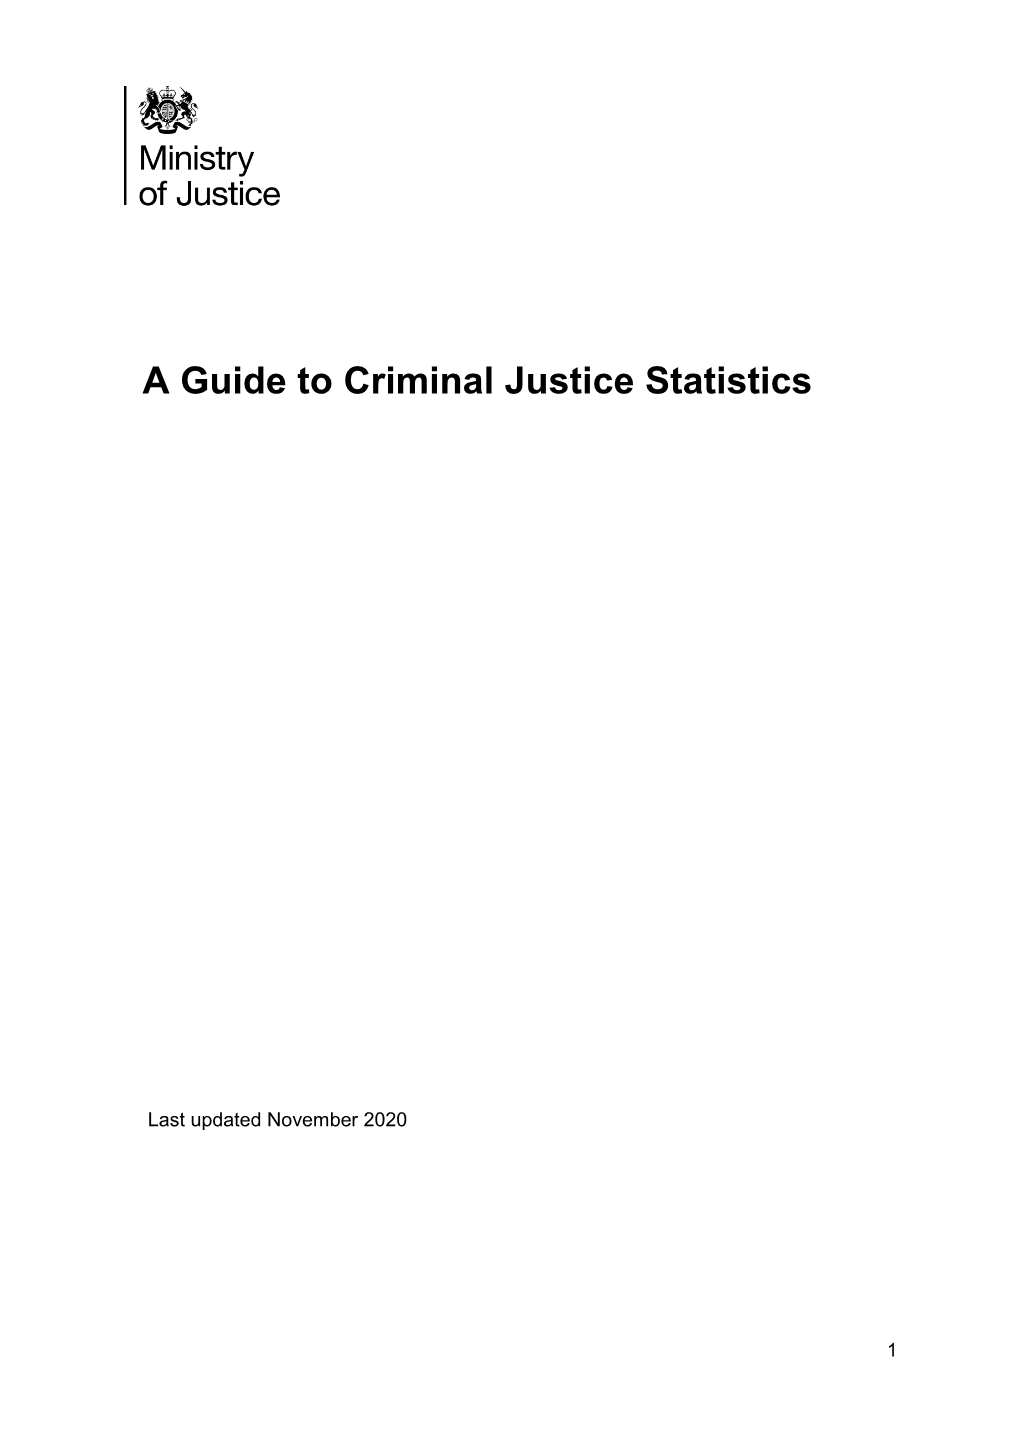 Criminal Justice System Statistics